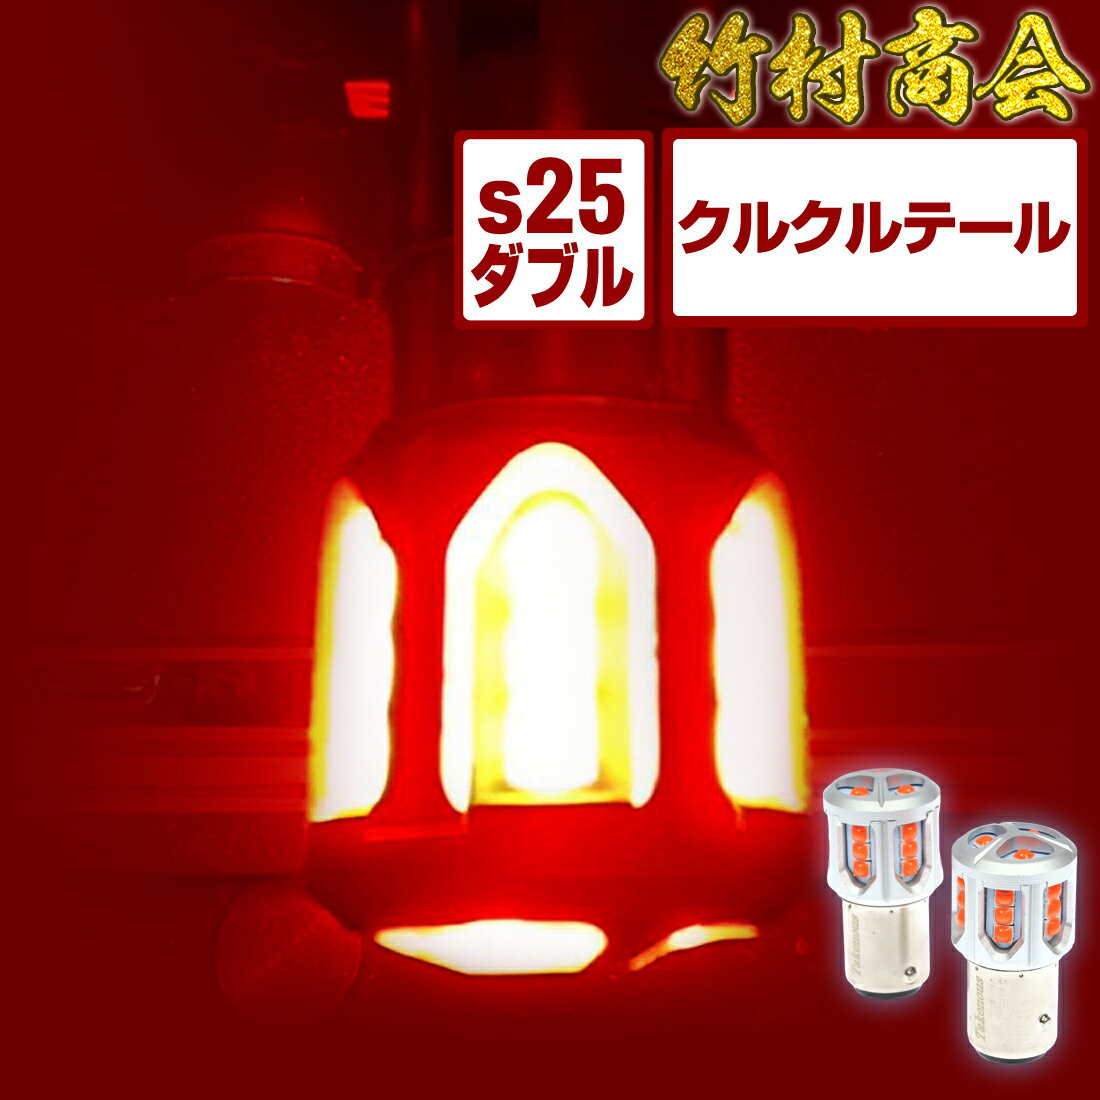 S25 LED ダブル レッド 24v led 電球 ク